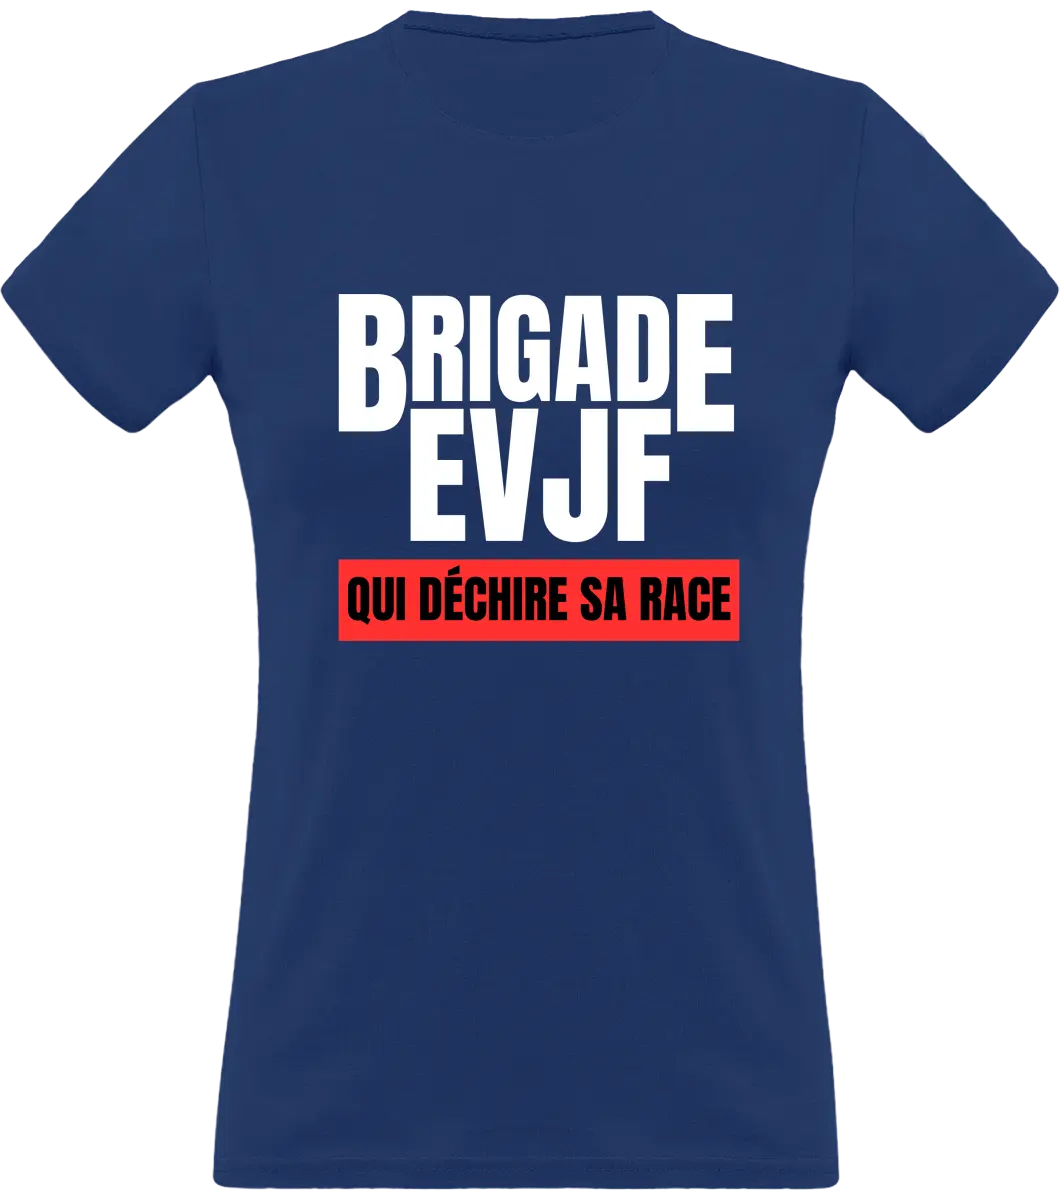 T-shirt EVJF "Brigade EVJF" - French Humour